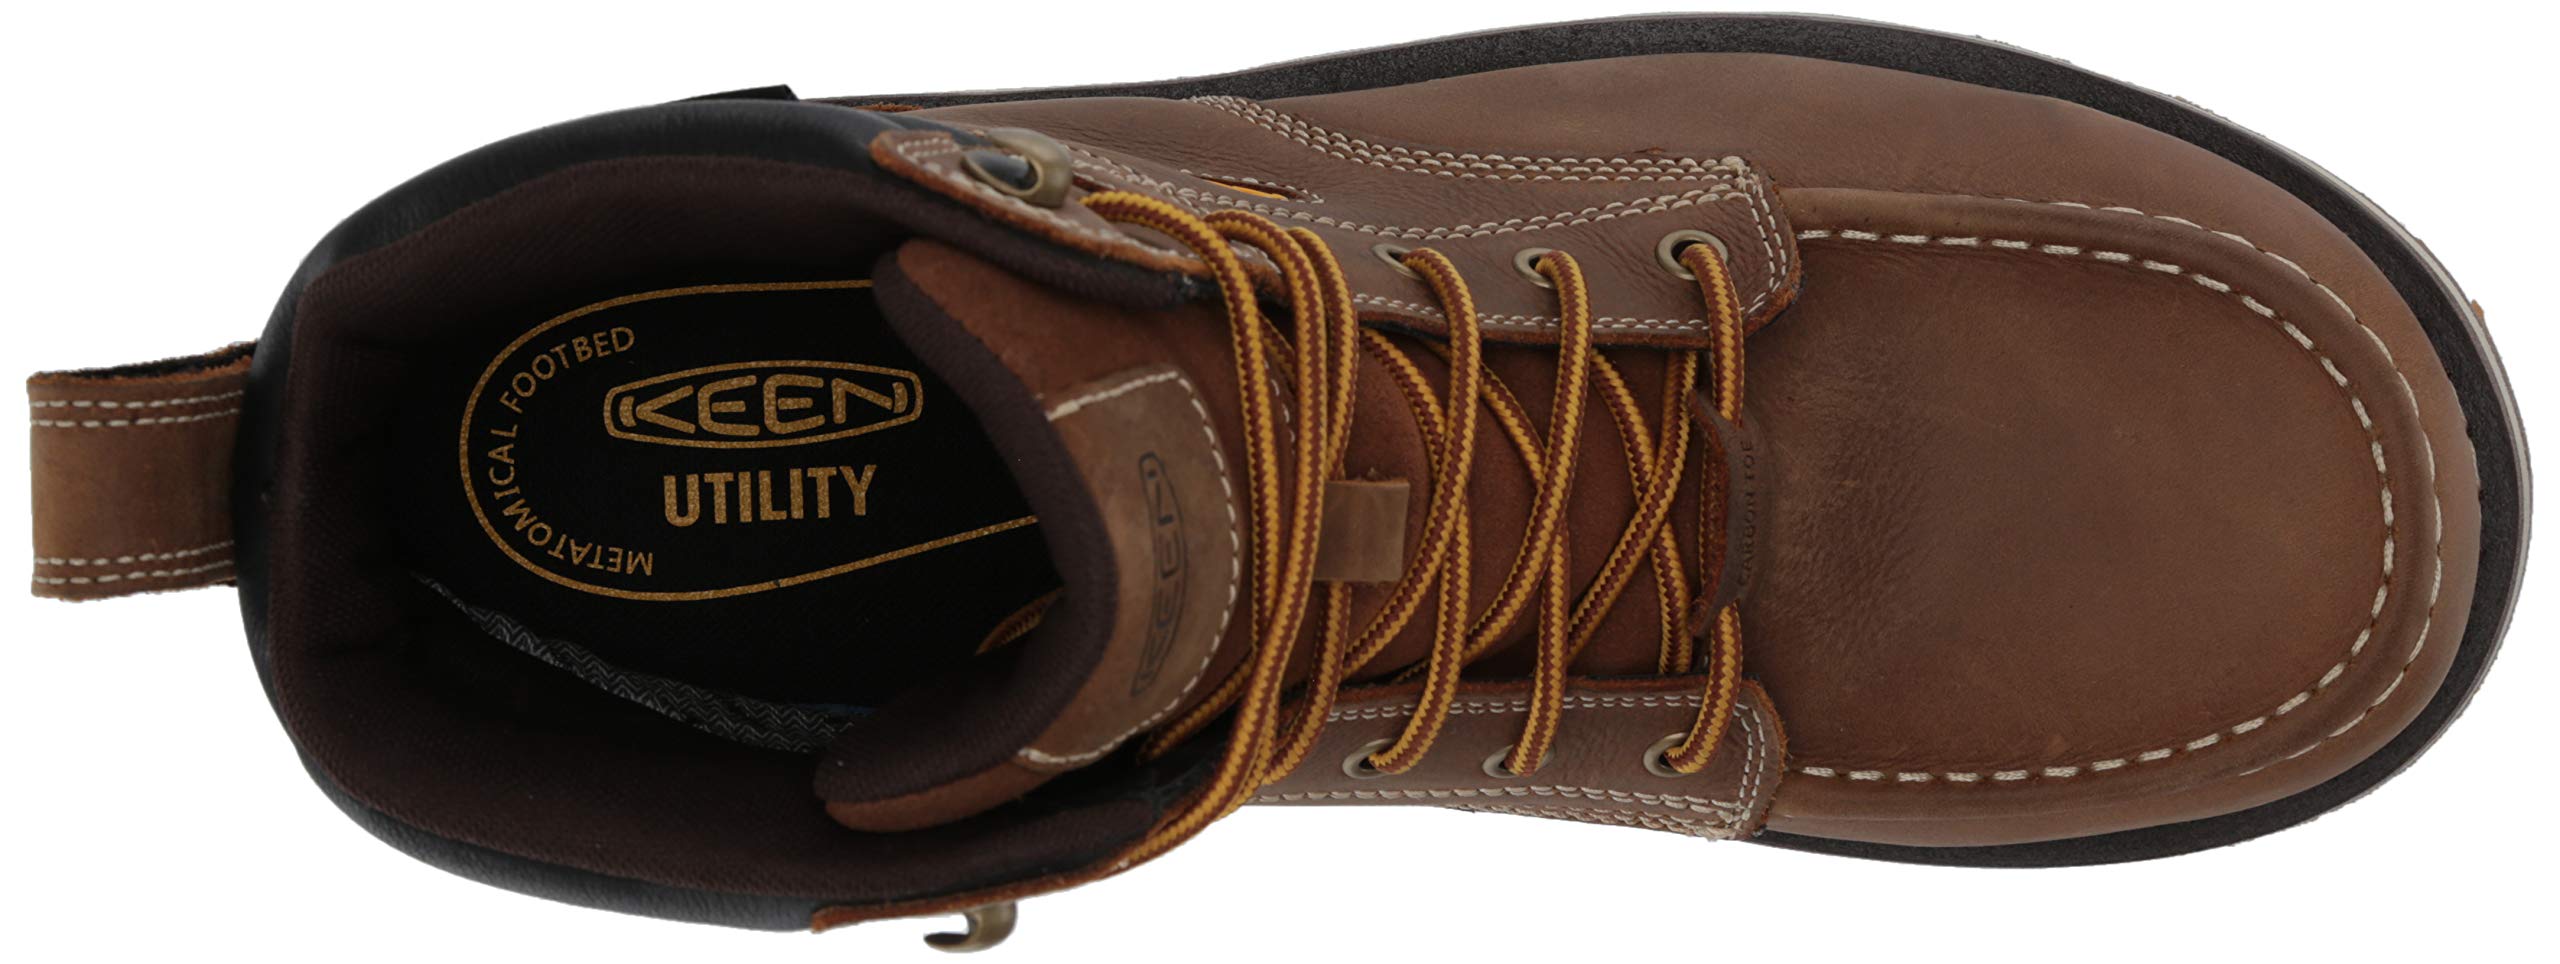 KEEN Utility Men's Cincinnati 6” Composite Toe Waterproof Wedge Work Boots